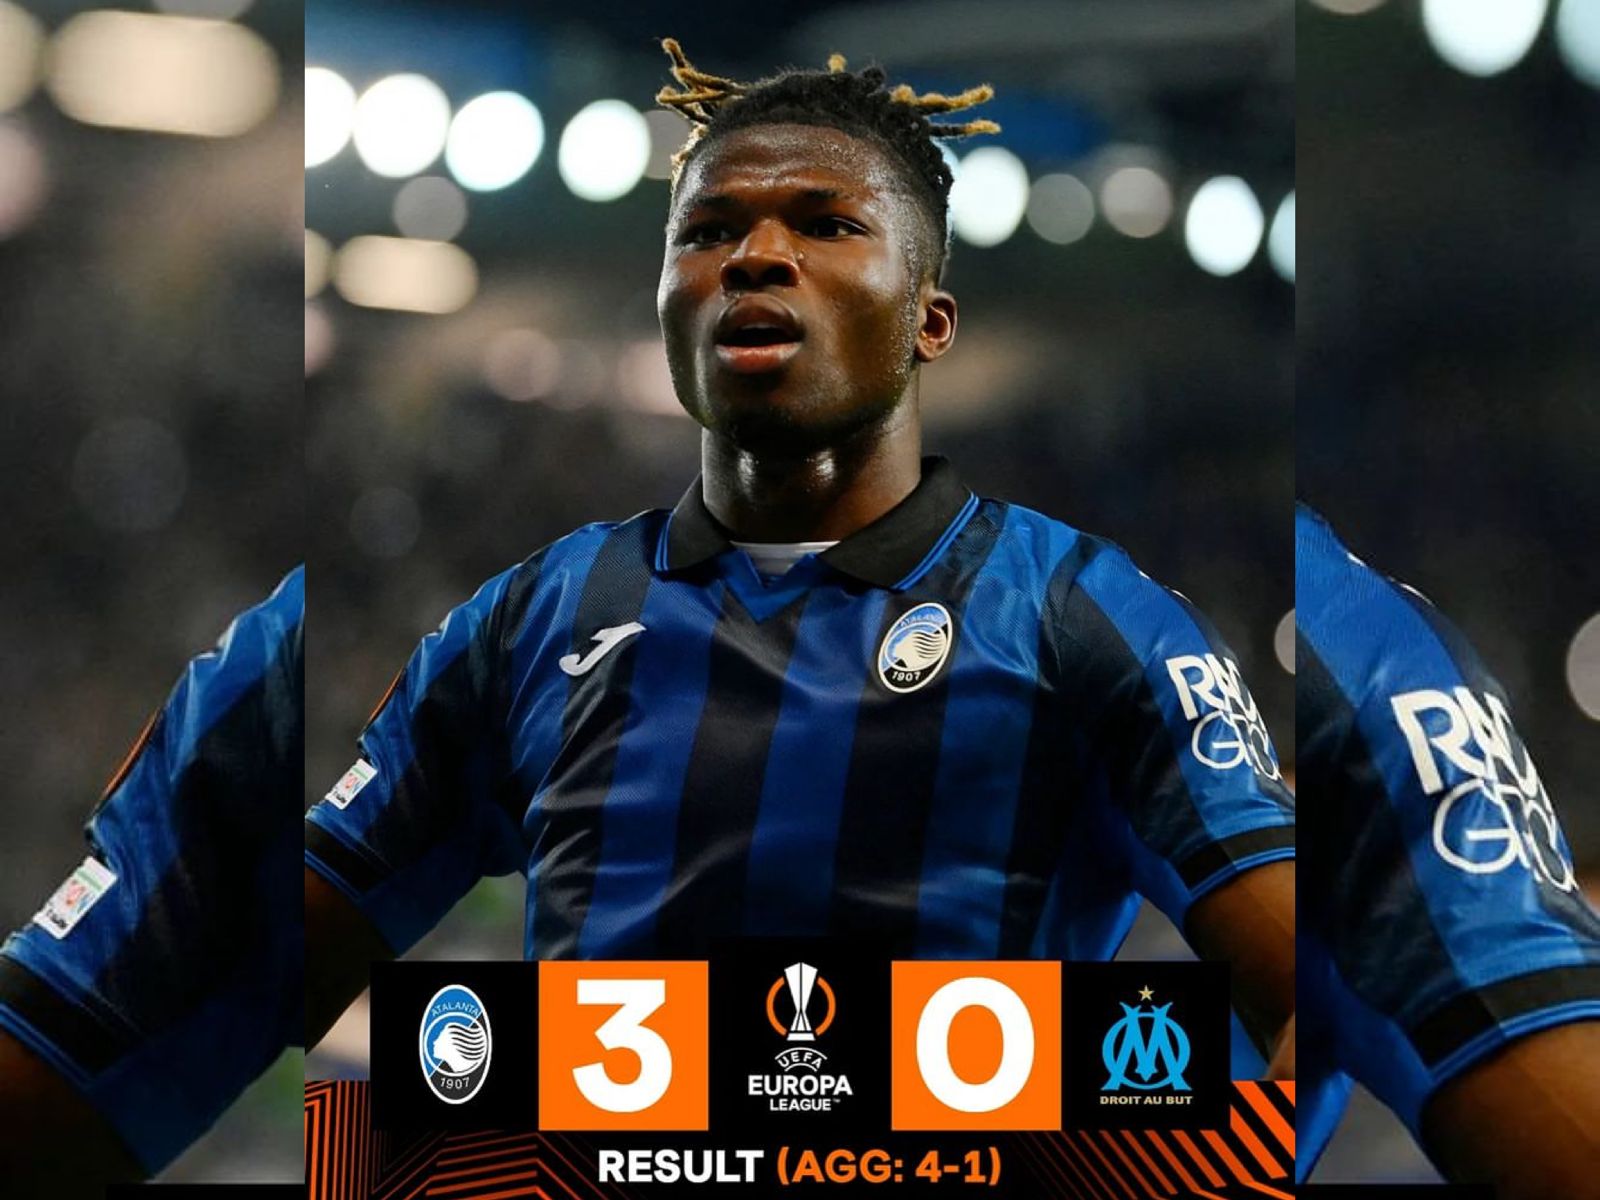 Hasil Semifinal Leg 2 Europa League Atalanta vs Marseille, La Dea Tembus ke Final dengan Agregat 4-1